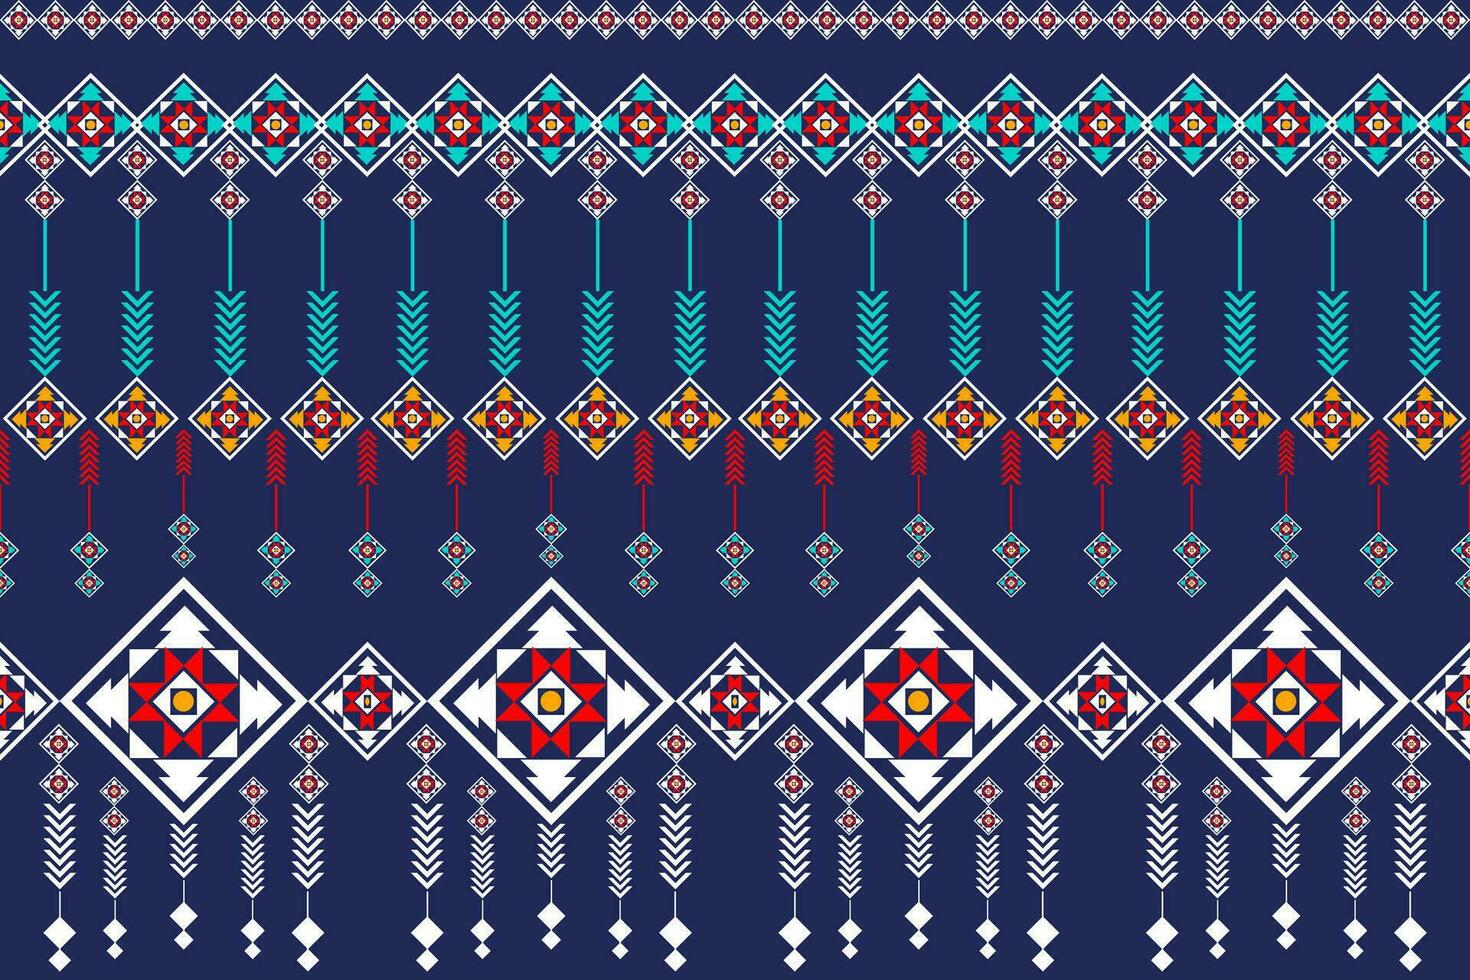 etnisk geometrisk sömlös mönster. design för tyg, kläder, dekorativ papper, omslag, broderi, illustration, vektor, stam- smattra vektor